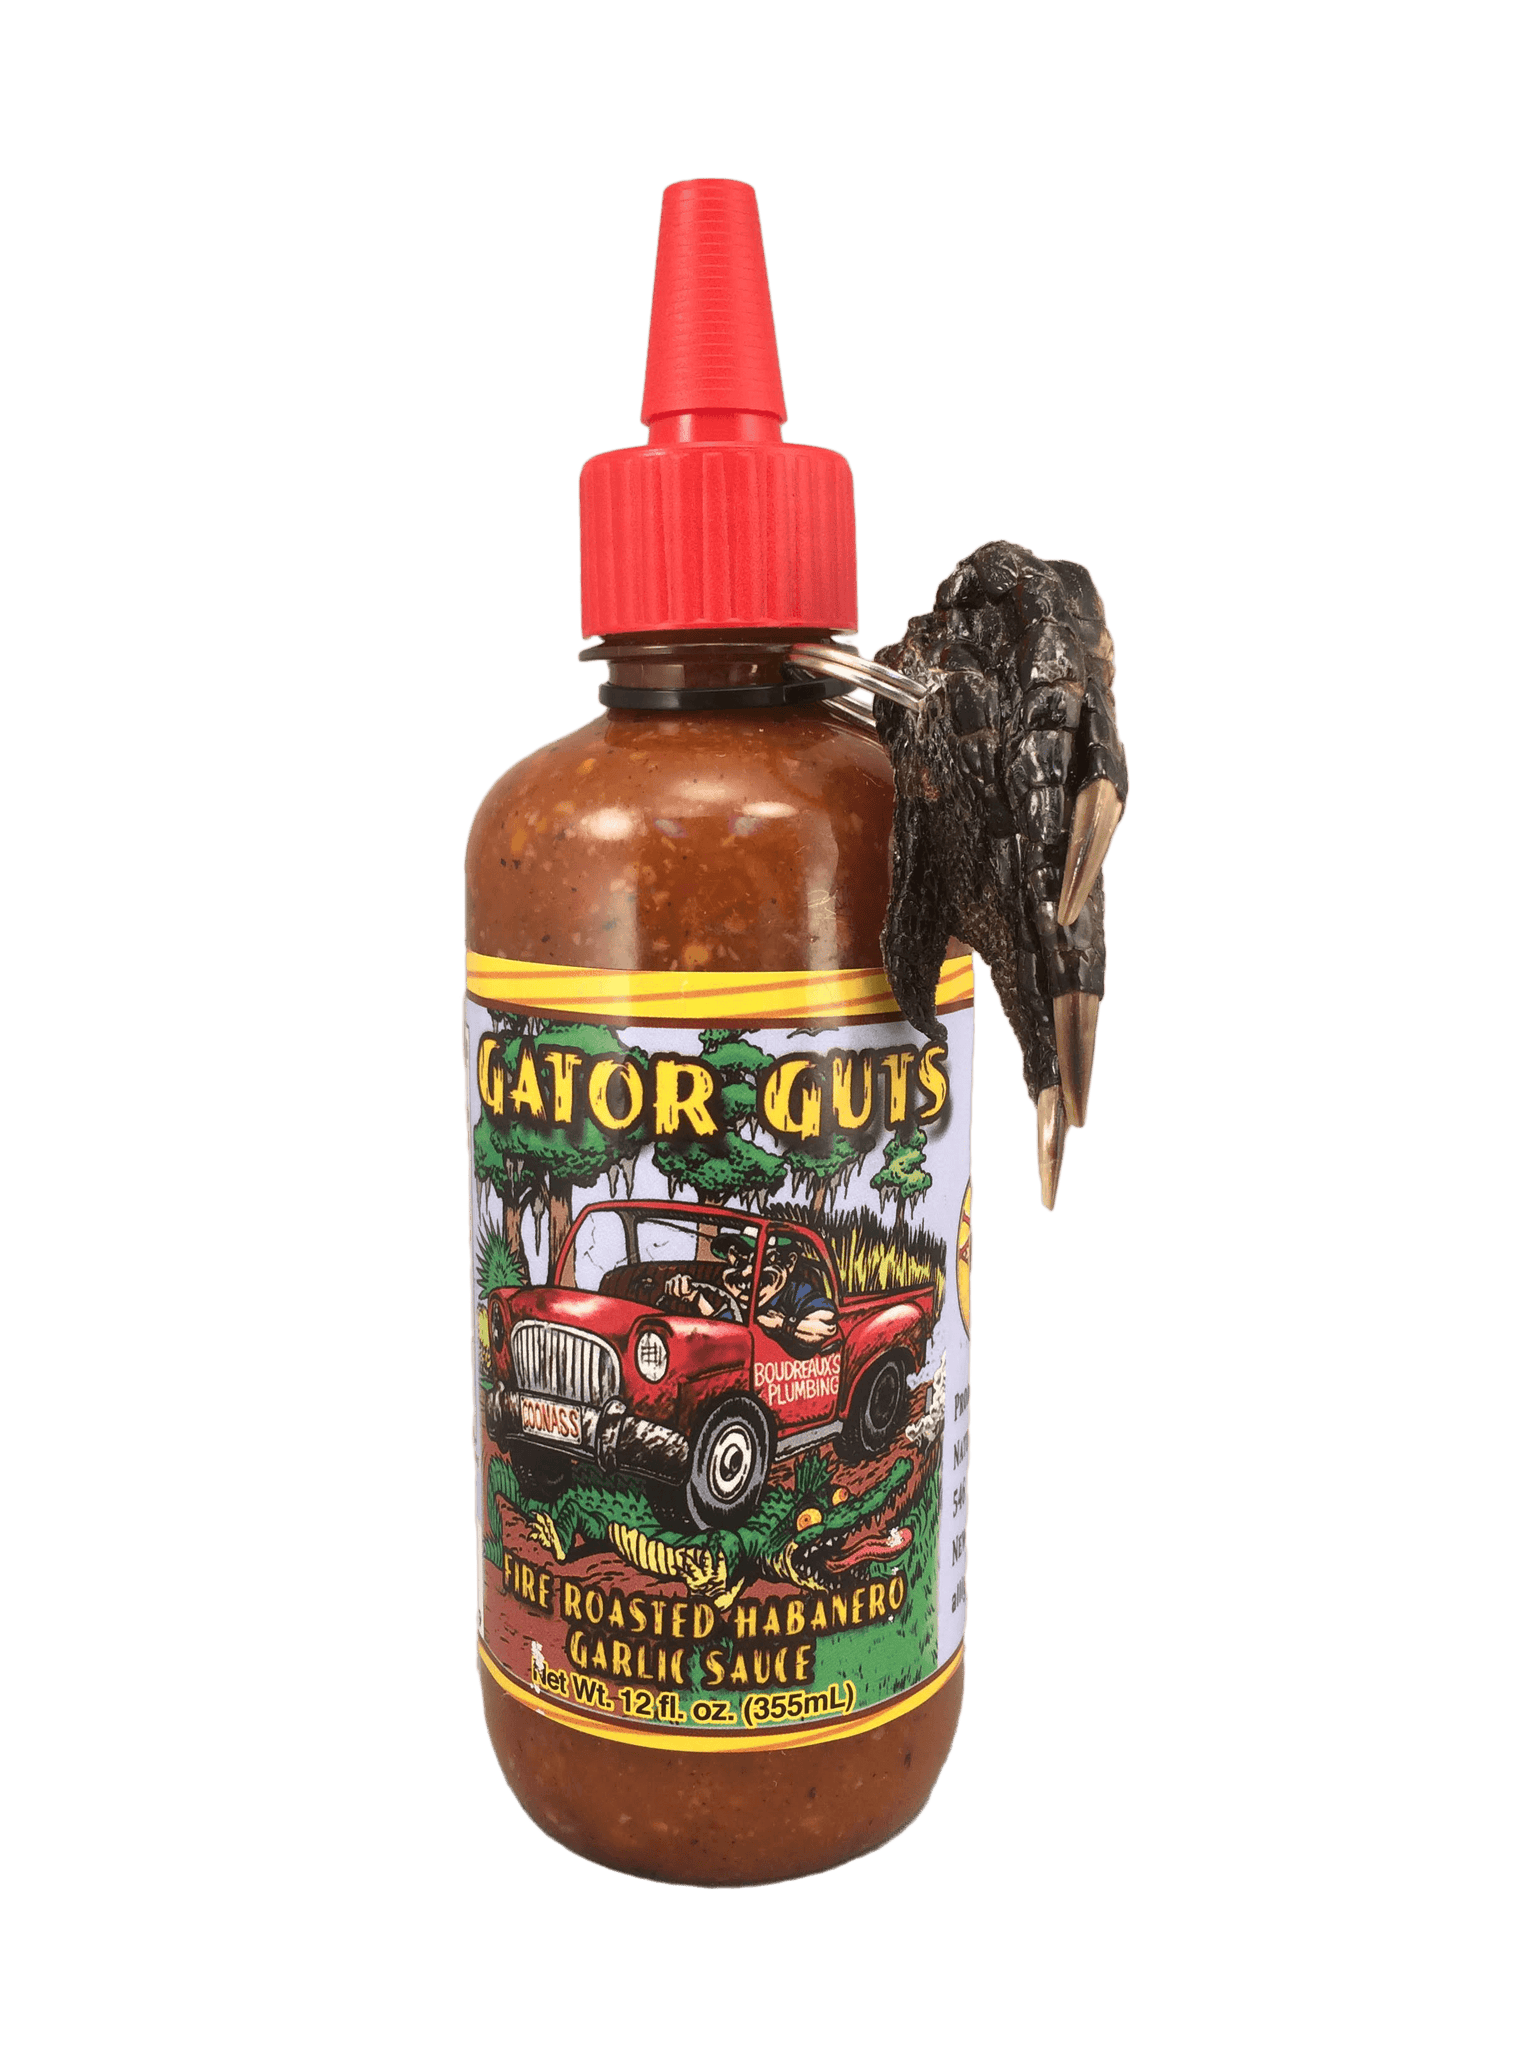 Gator Guts Fire-Roasted Habanero Garlic Sauce